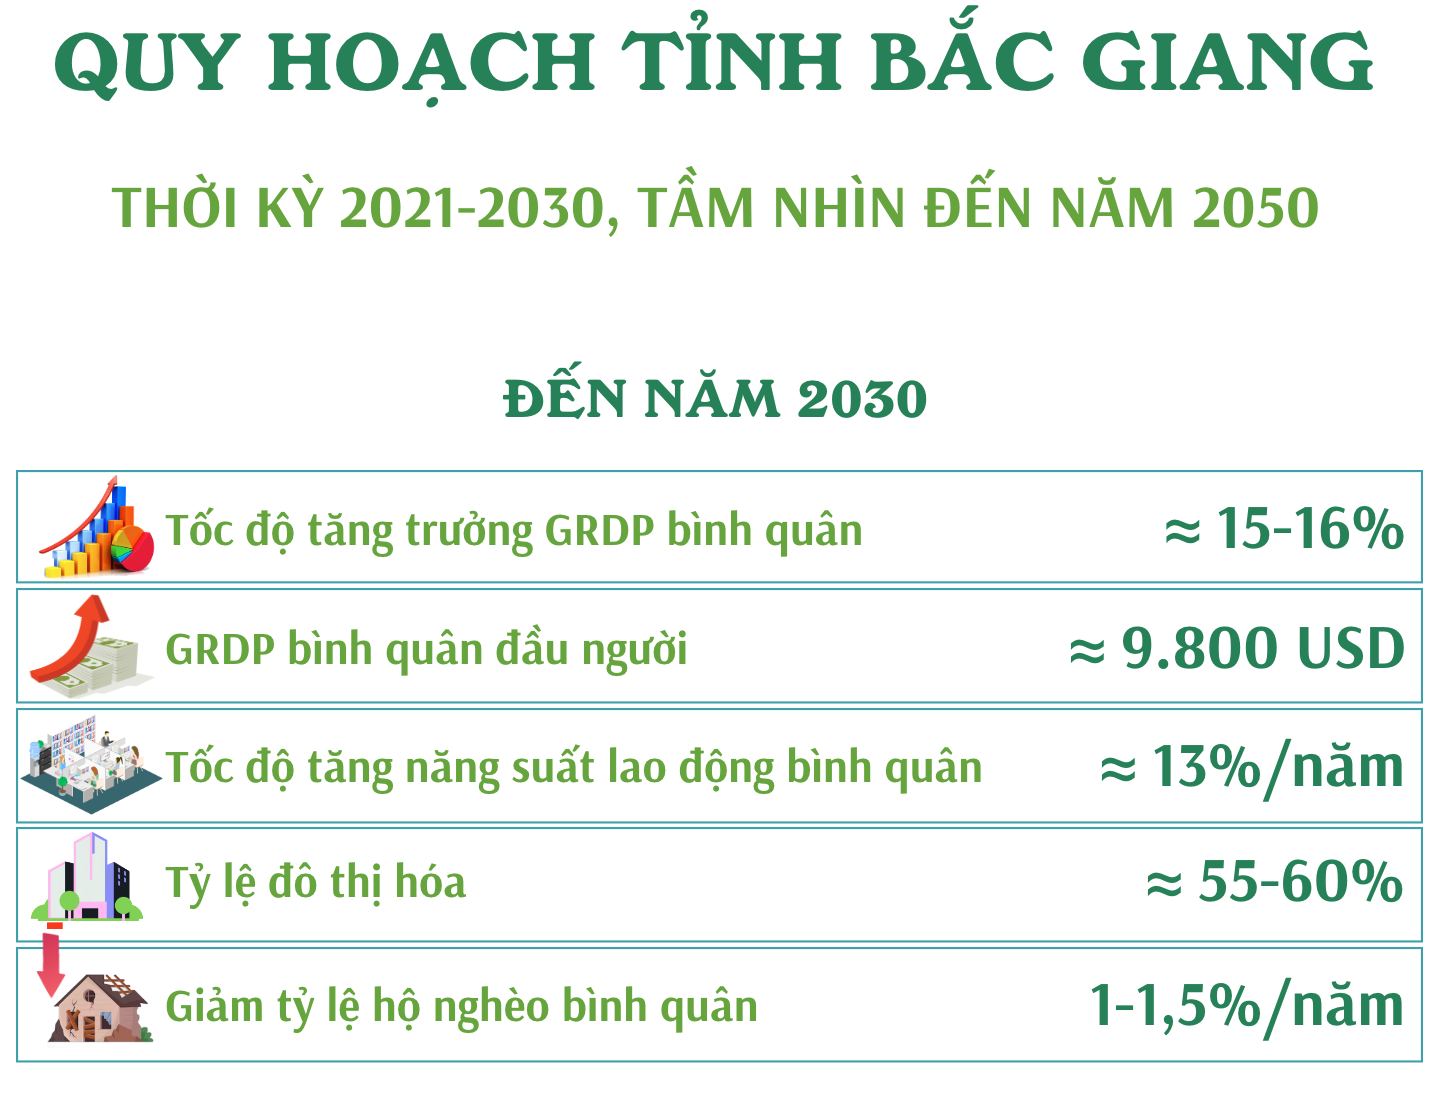 Quy hoạch Bắc Giang tầm nhìn đến 2030